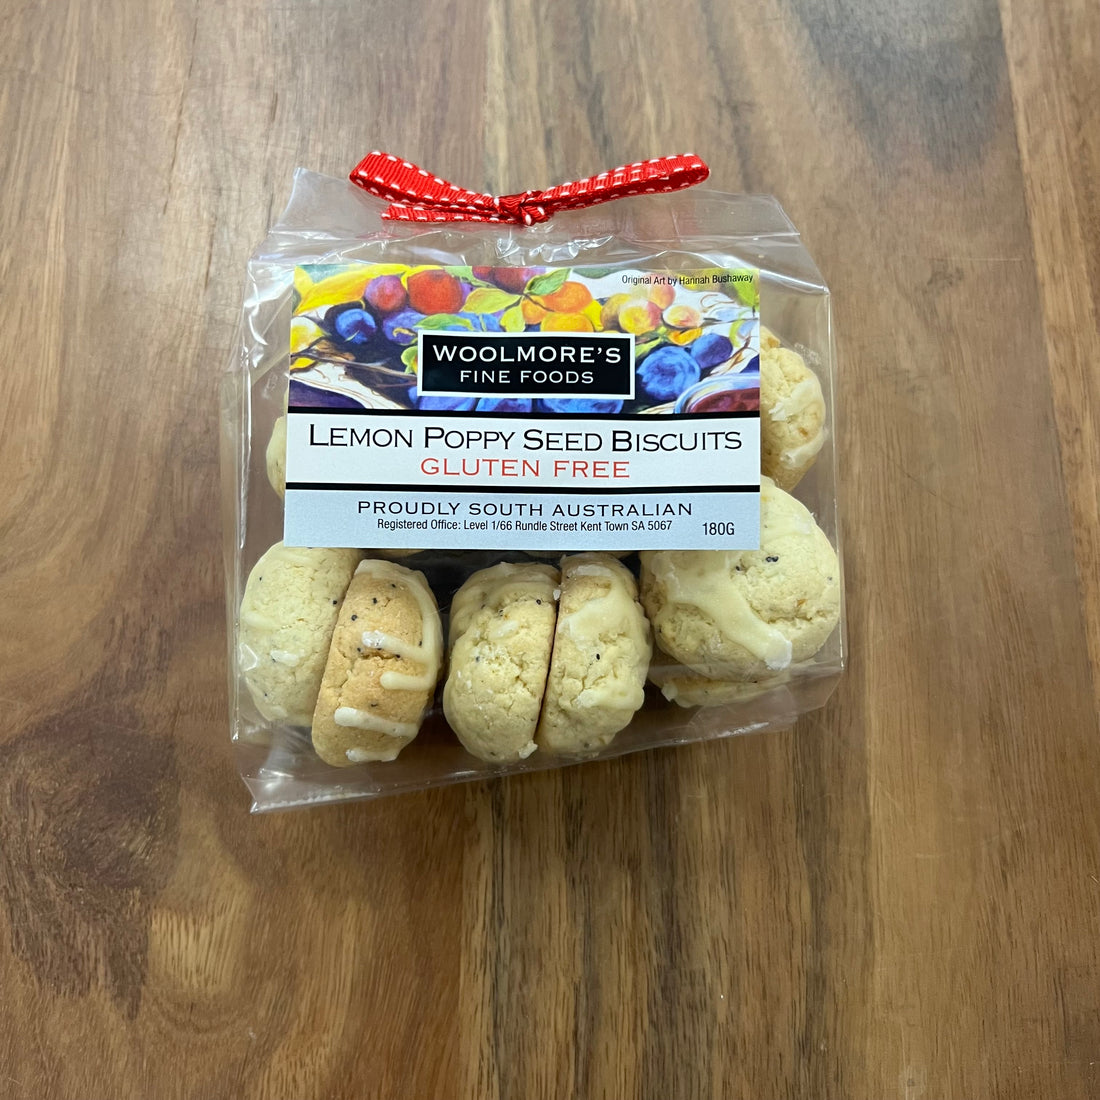 Woolmore’s Lemon Poppy Seed Biscuits